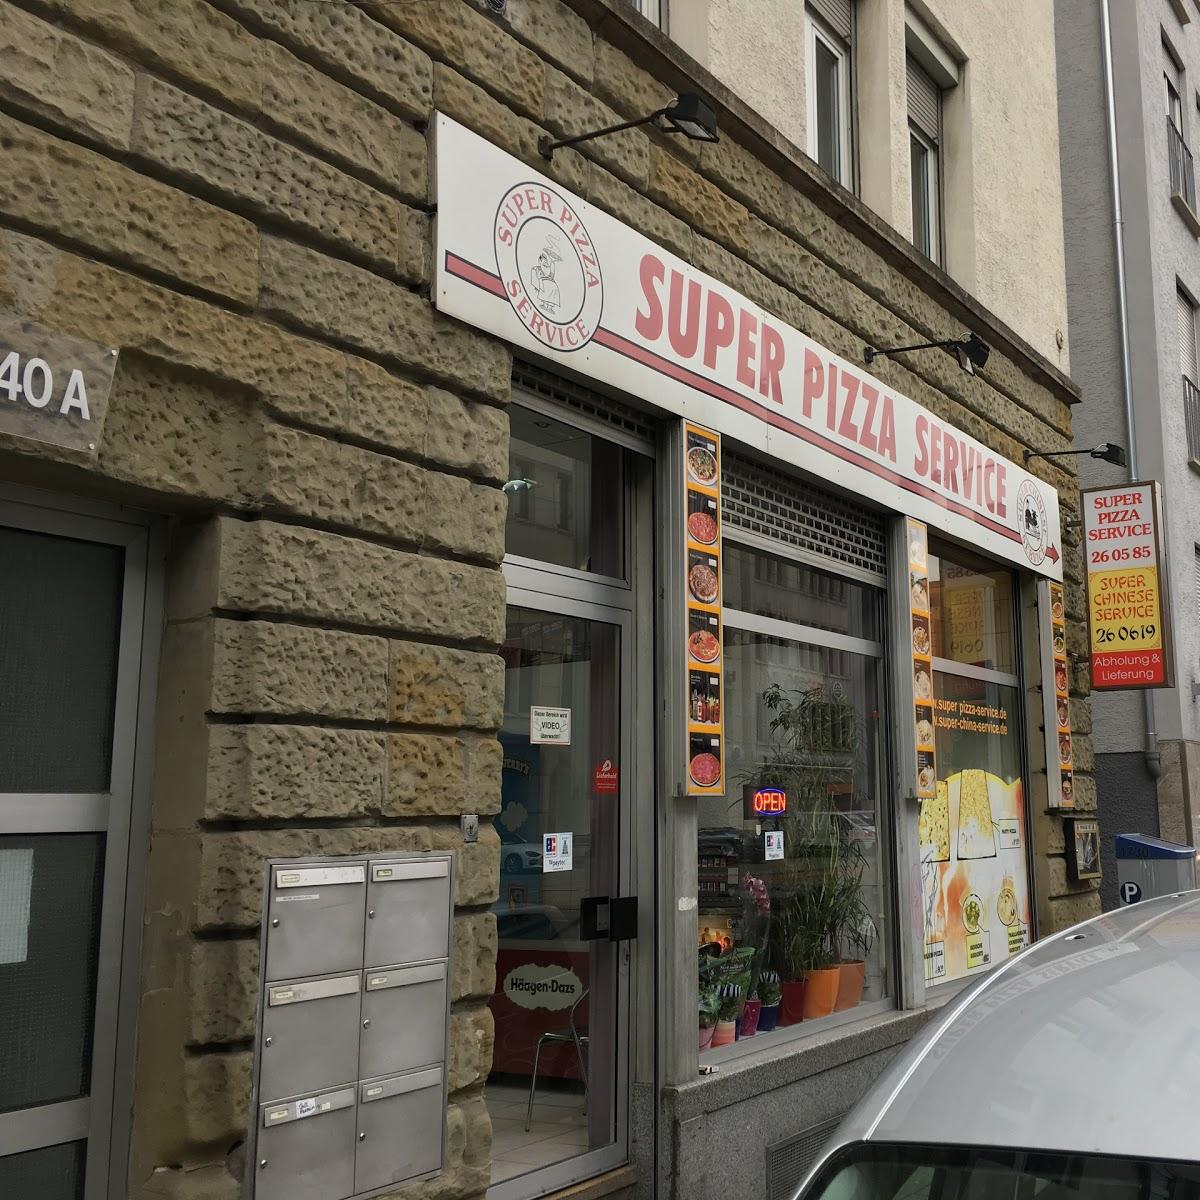 Super China & Pizza Service